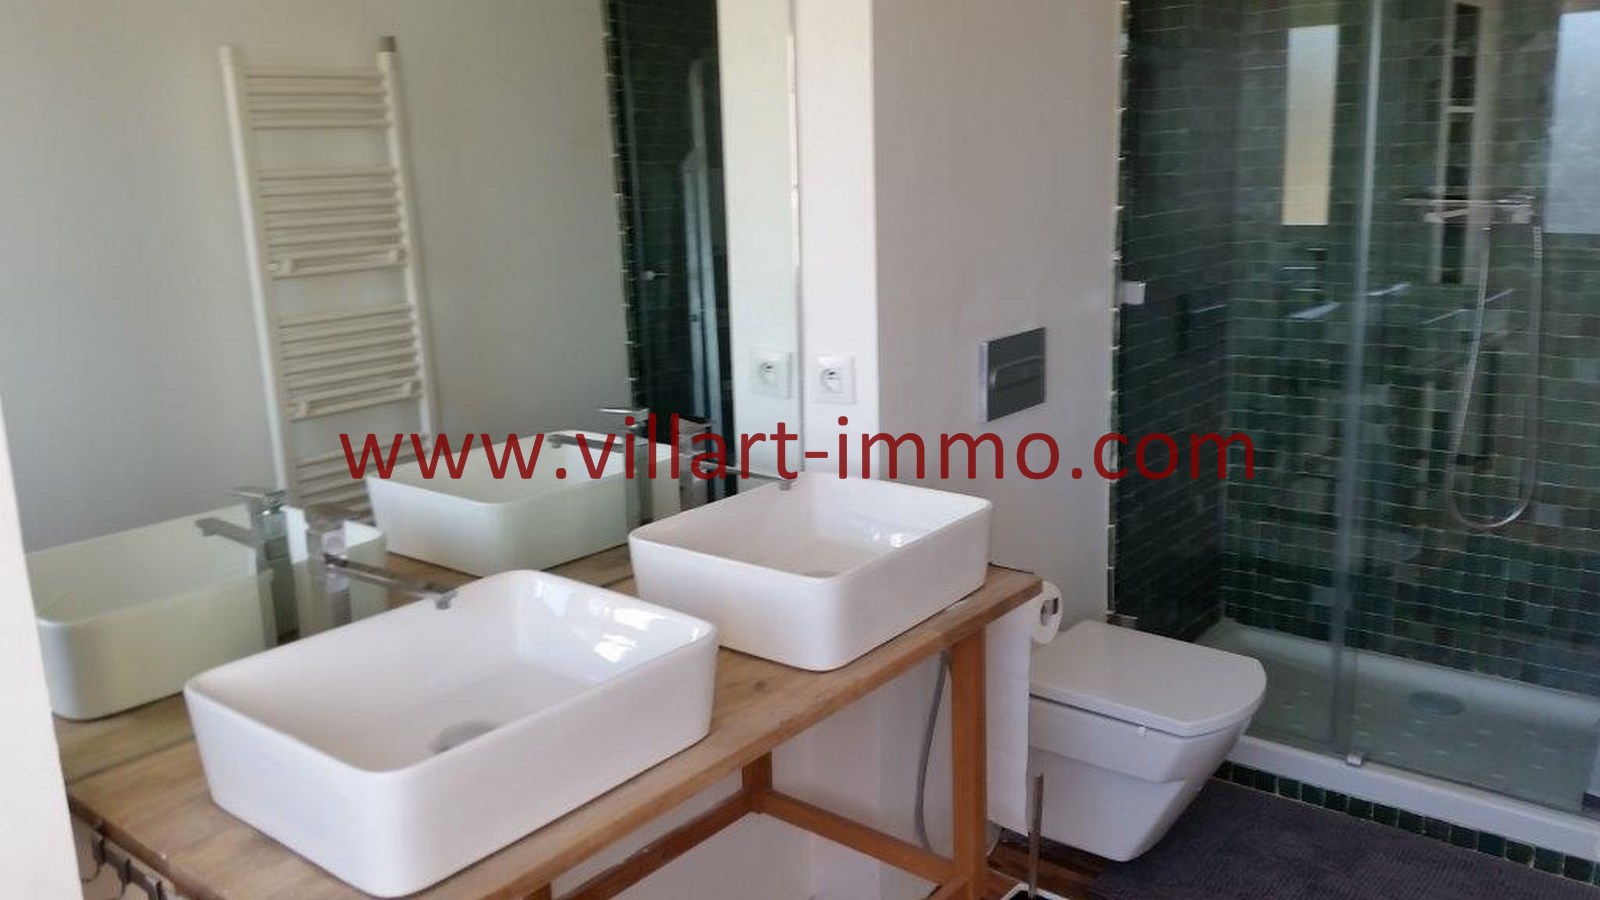 12-Location-Appartement-Meublé-Tanger-Salle de bain 1-L759-Villart immo